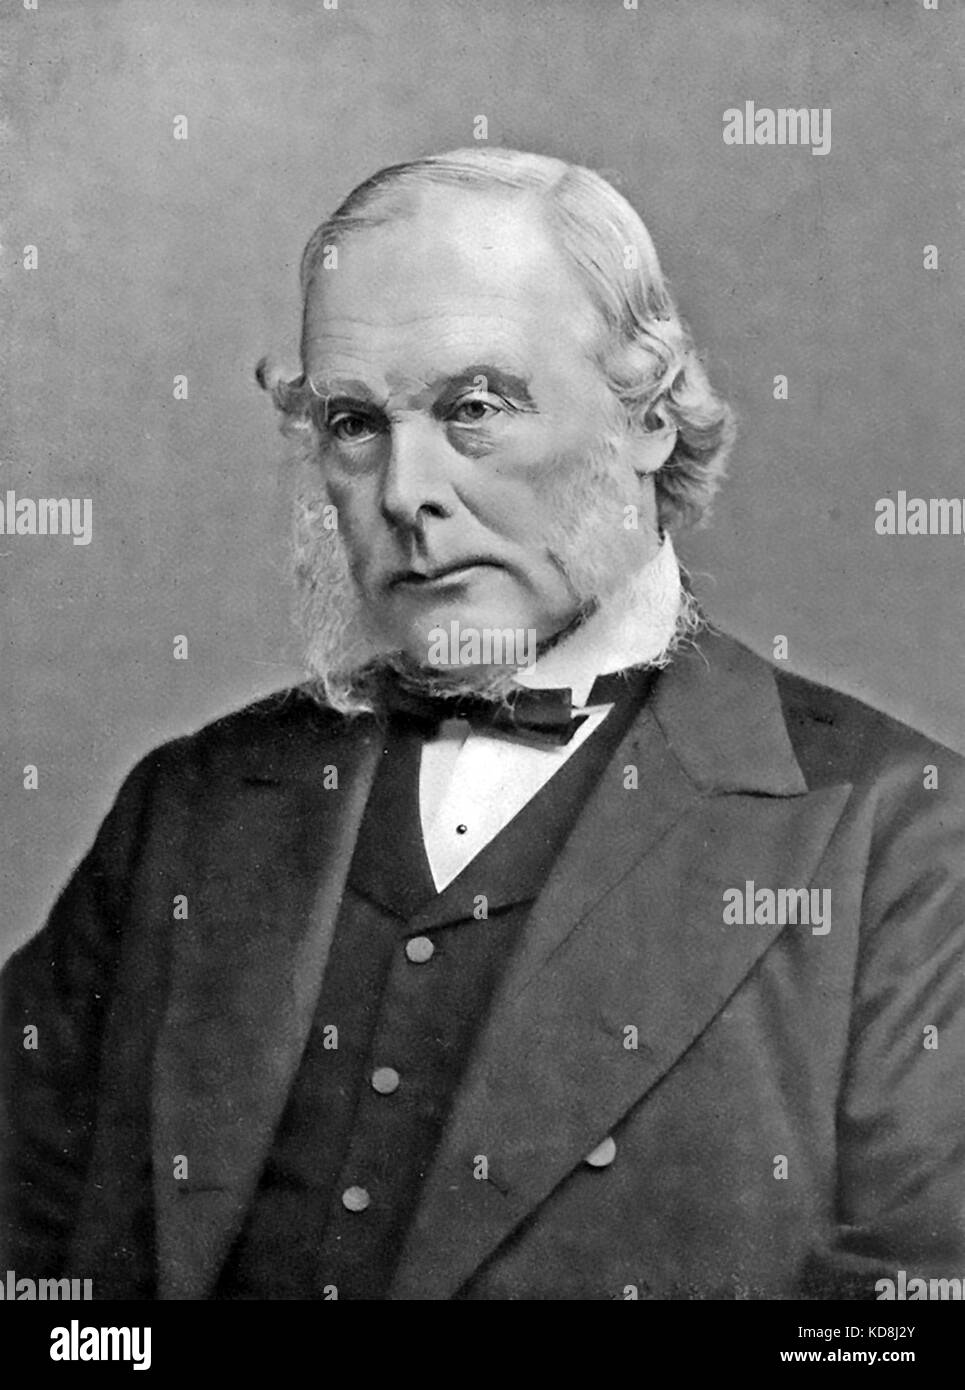 Joseph LISTER (1827-1912) chirurgo britannico che ha aperto la strada alla chirurgia antisettica. Foto del 1902. Foto Stock